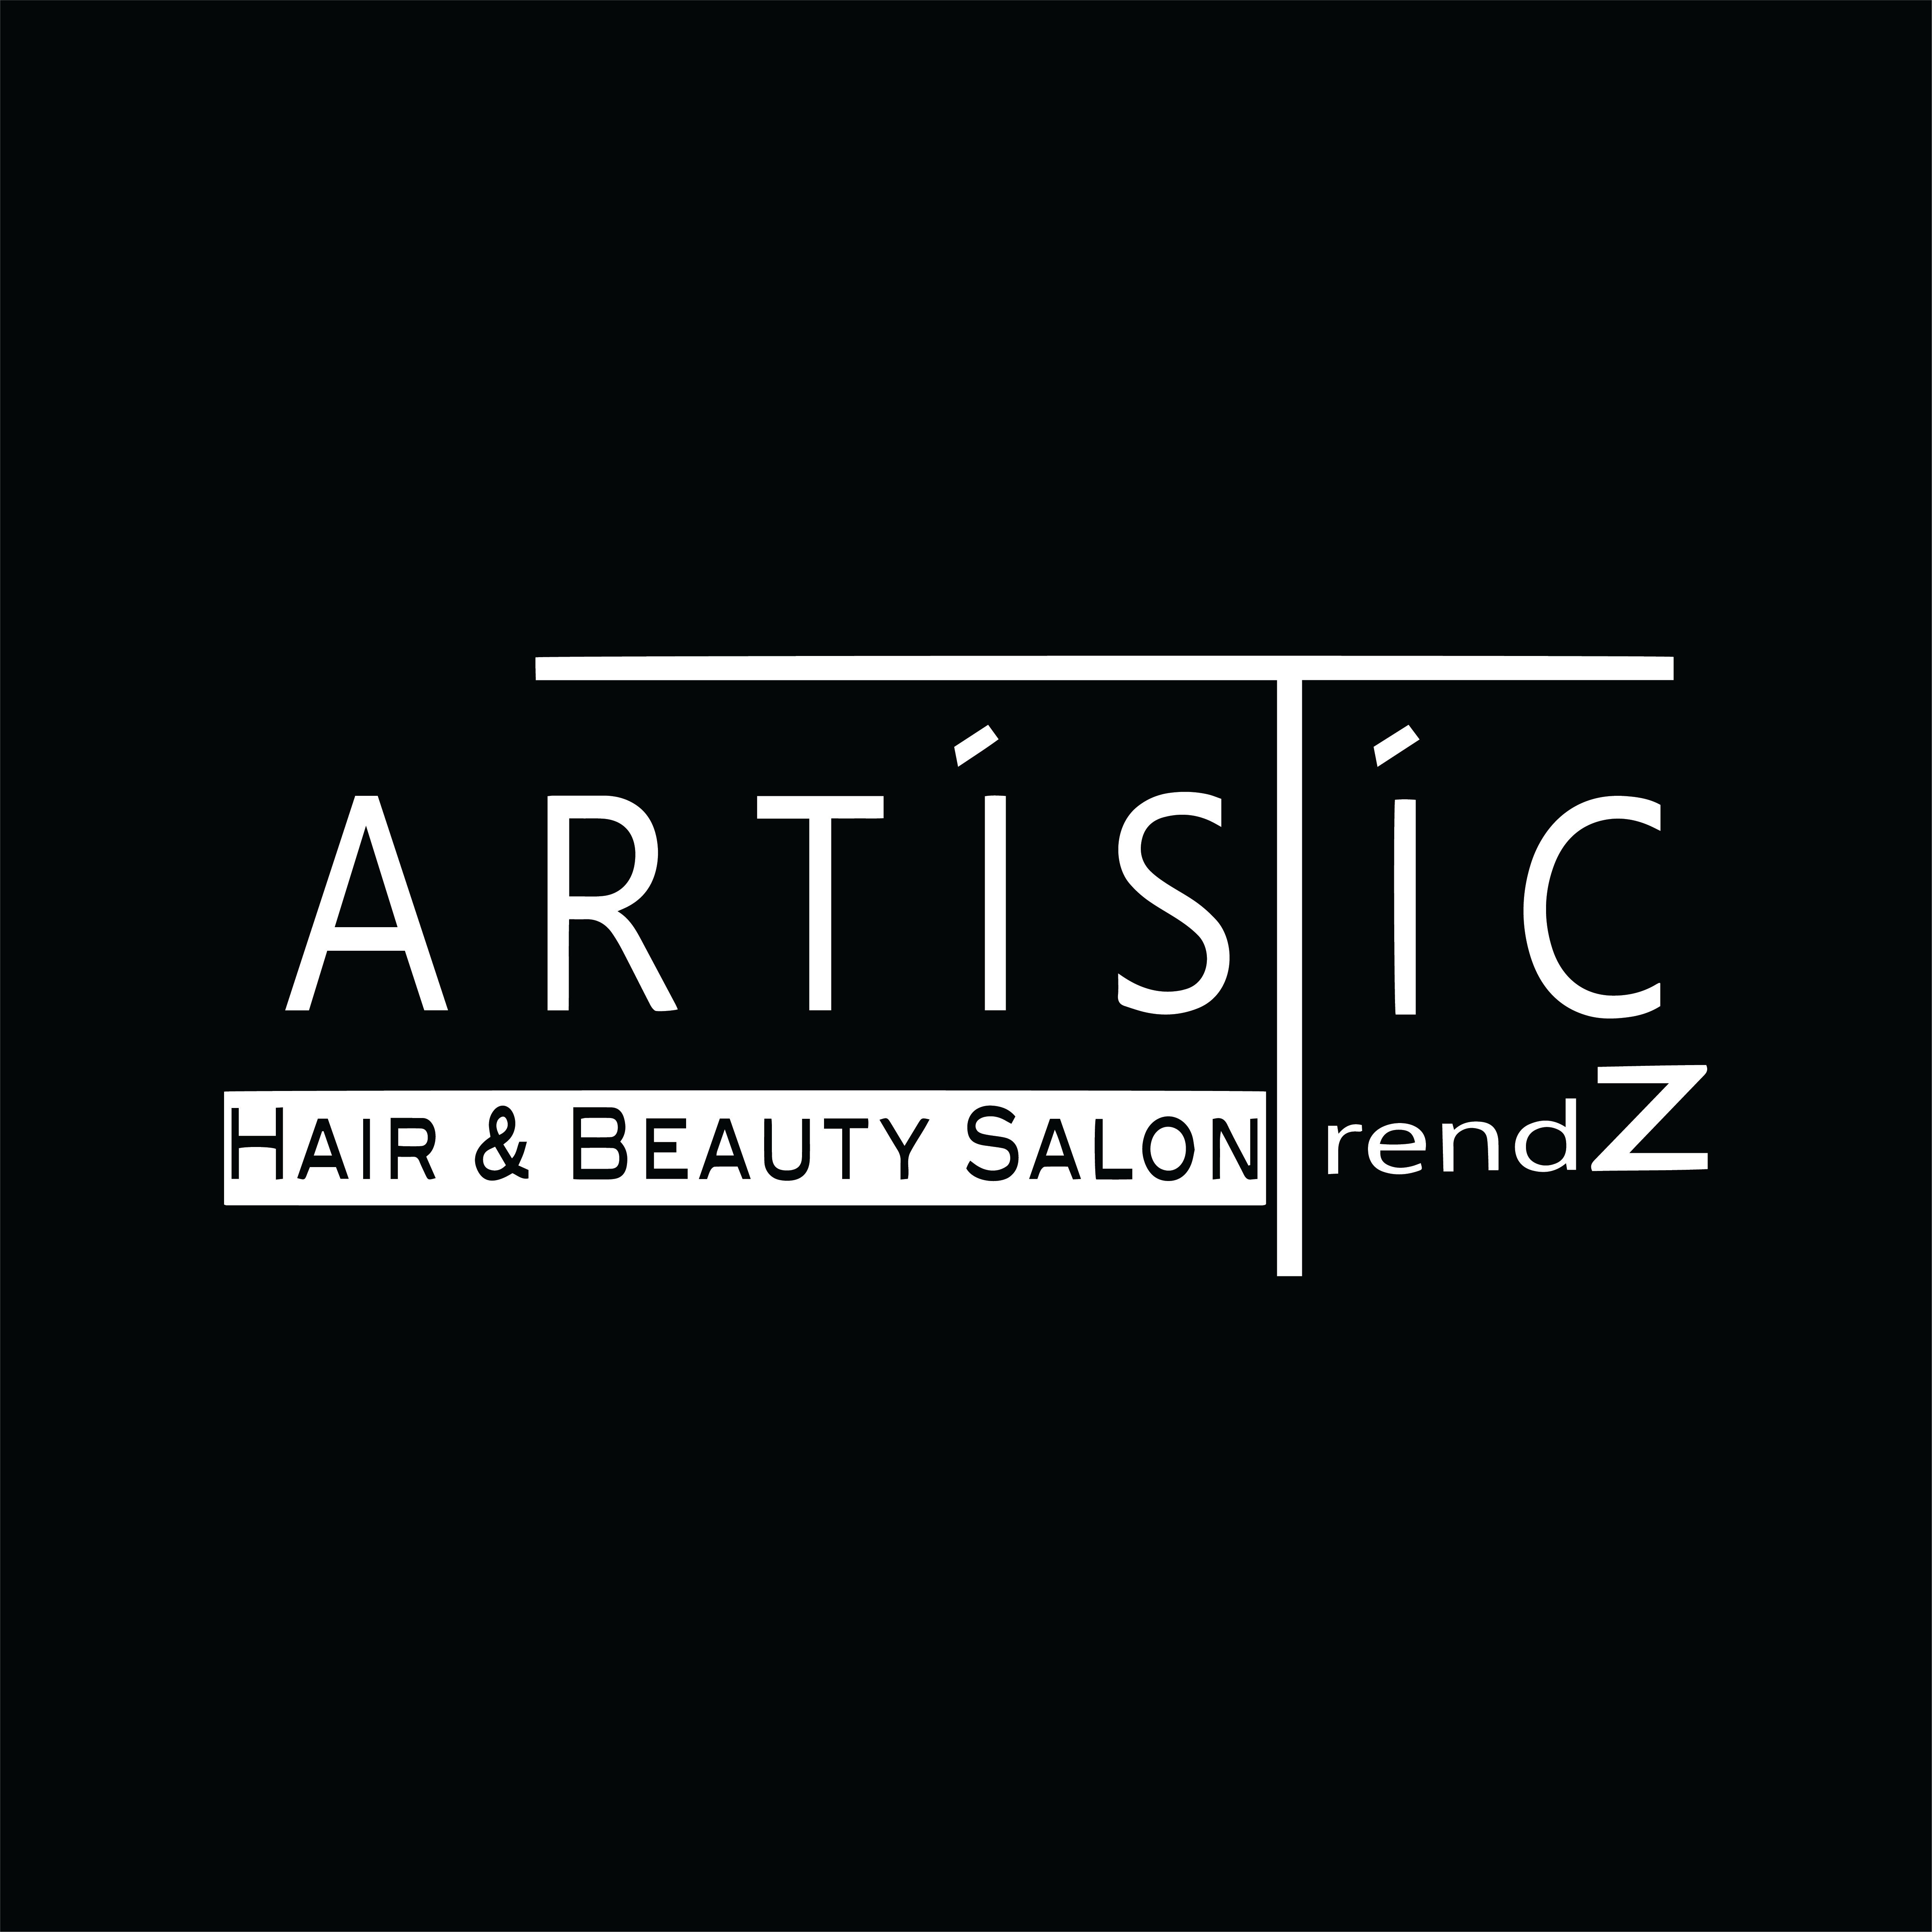 Artistic Trendz Beauty Salon & Store - Kozmetika, Smink, Fodrászat, Kézápolás, Lábápolás, Wax hölgyek